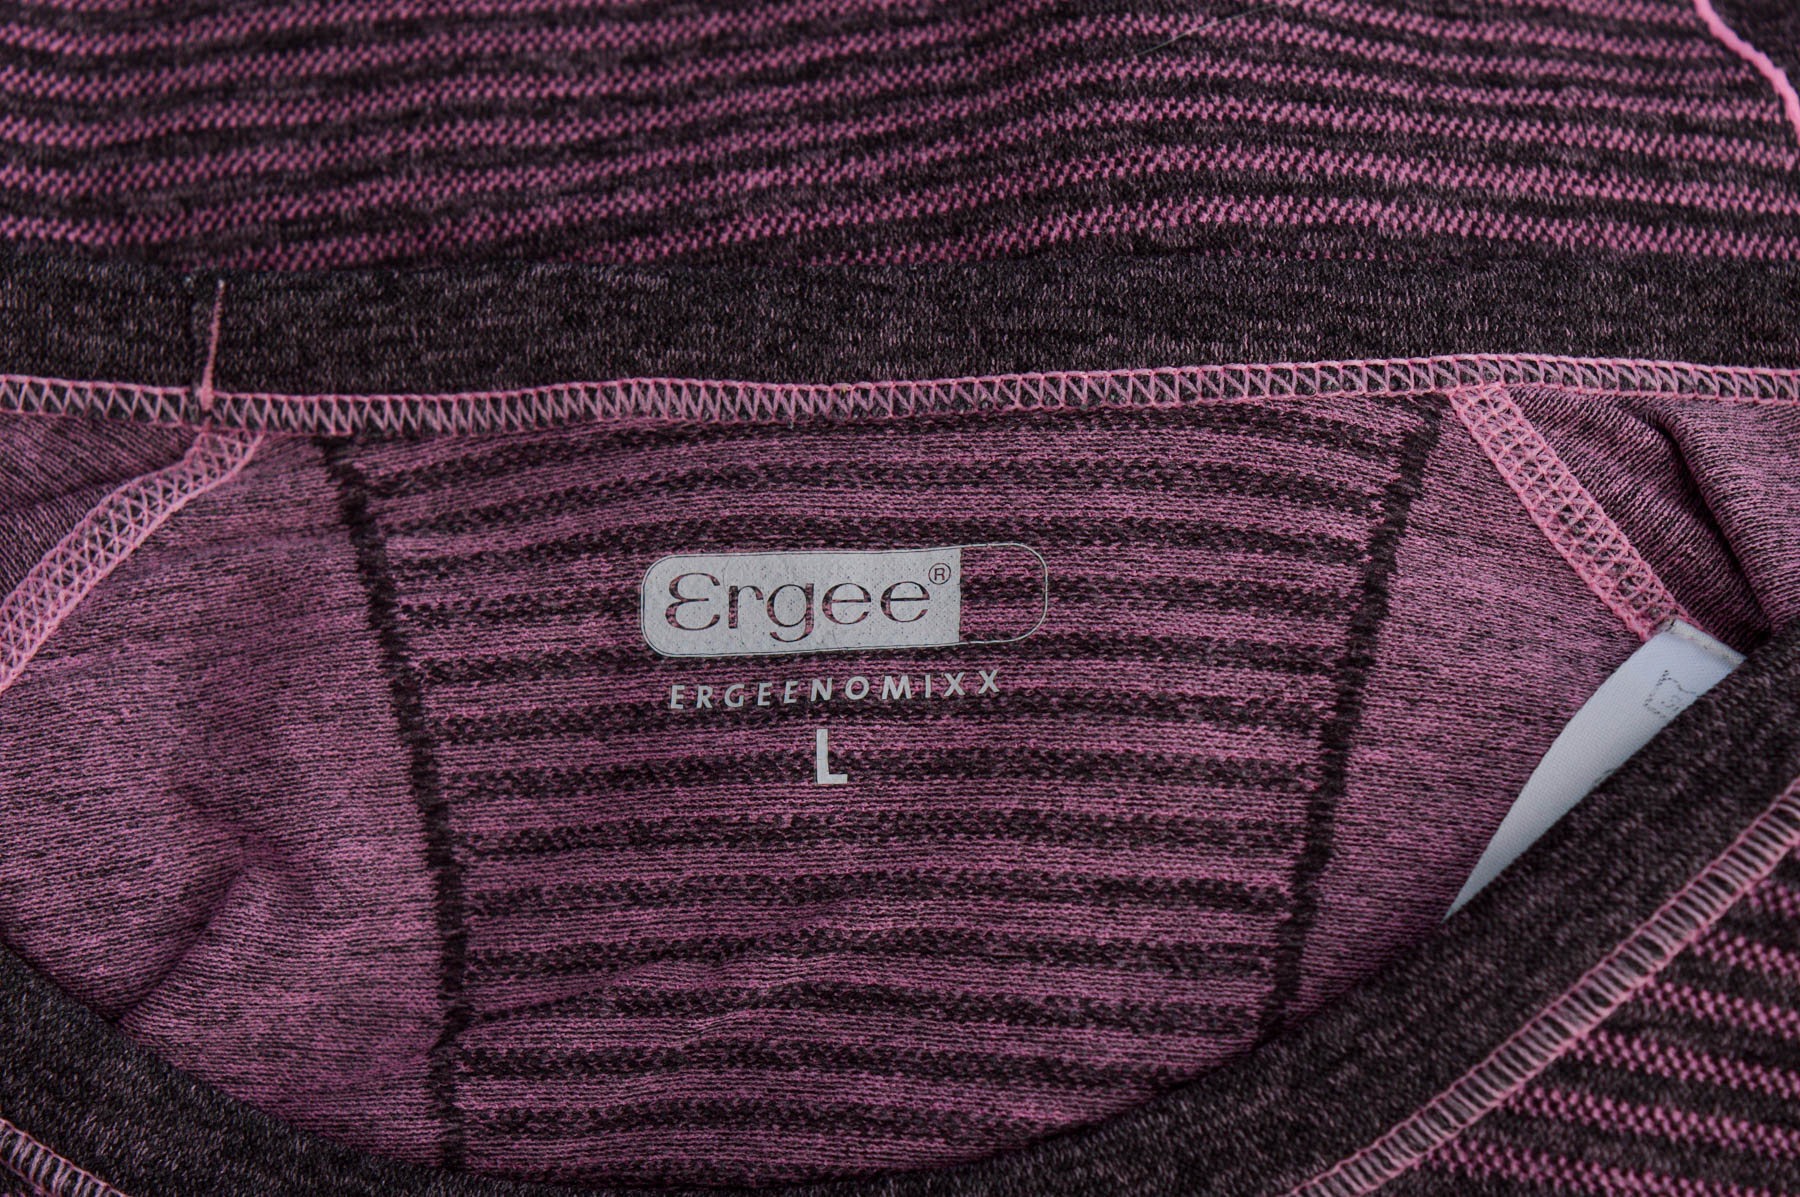 Γυναικεία μπλούζα - Ergee - 2